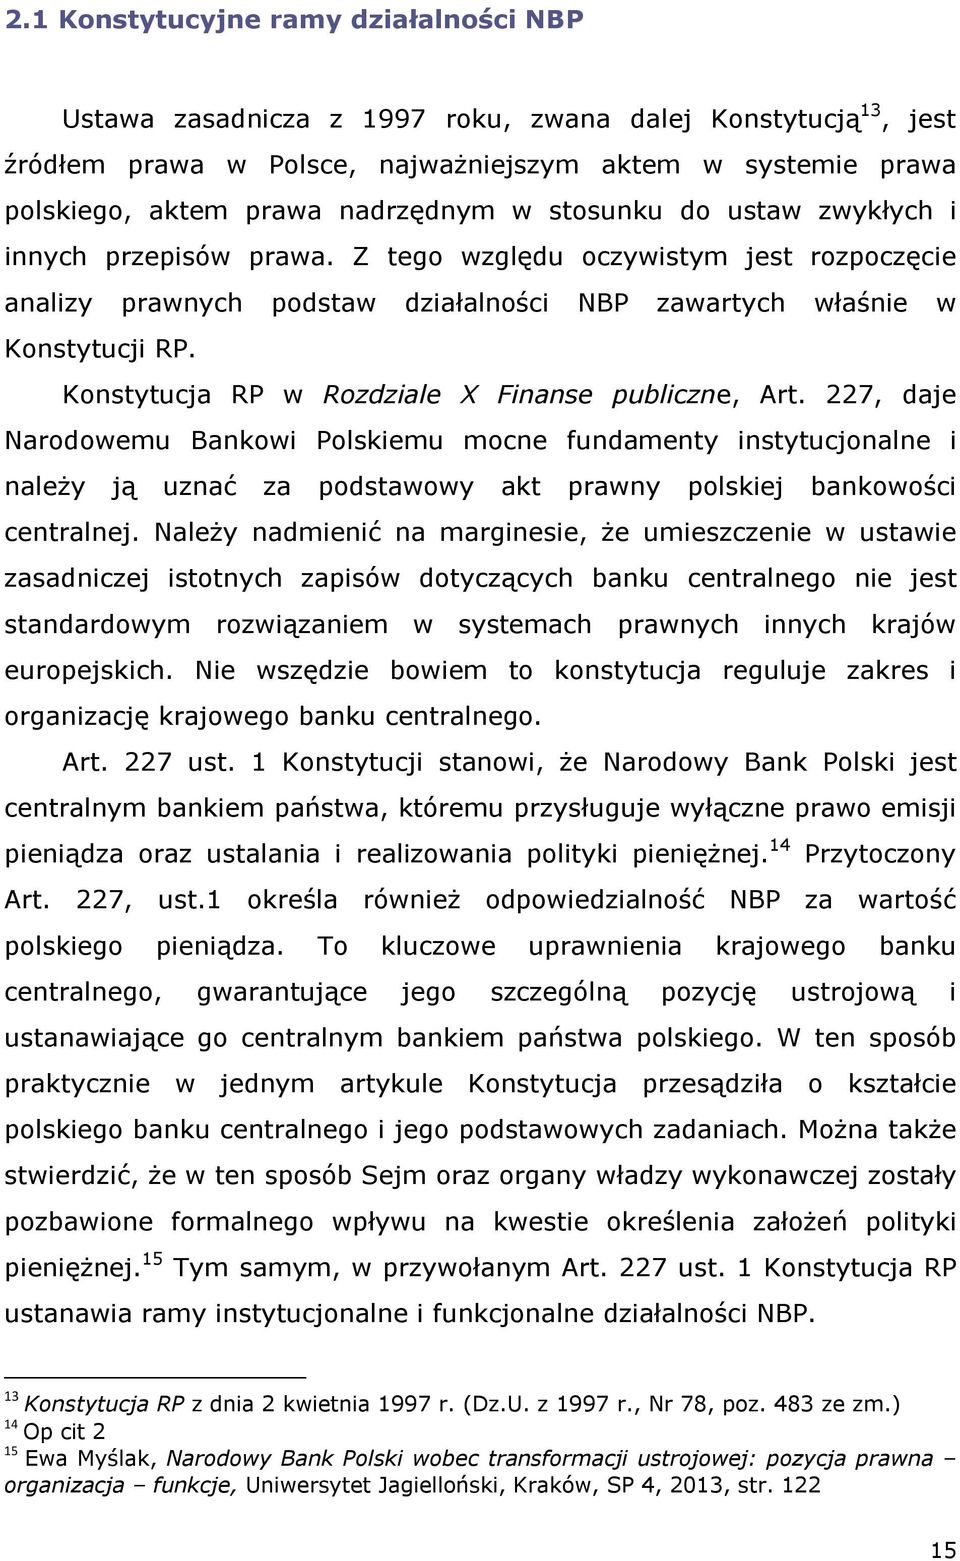 Konstytucja RP w Rozdziale X Finanse publiczne, Art. 227, daje Narodowemu Bankowi Polskiemu mocne fundamenty instytucjonalne i należy ją uznać za podstawowy akt prawny polskiej bankowości centralnej.